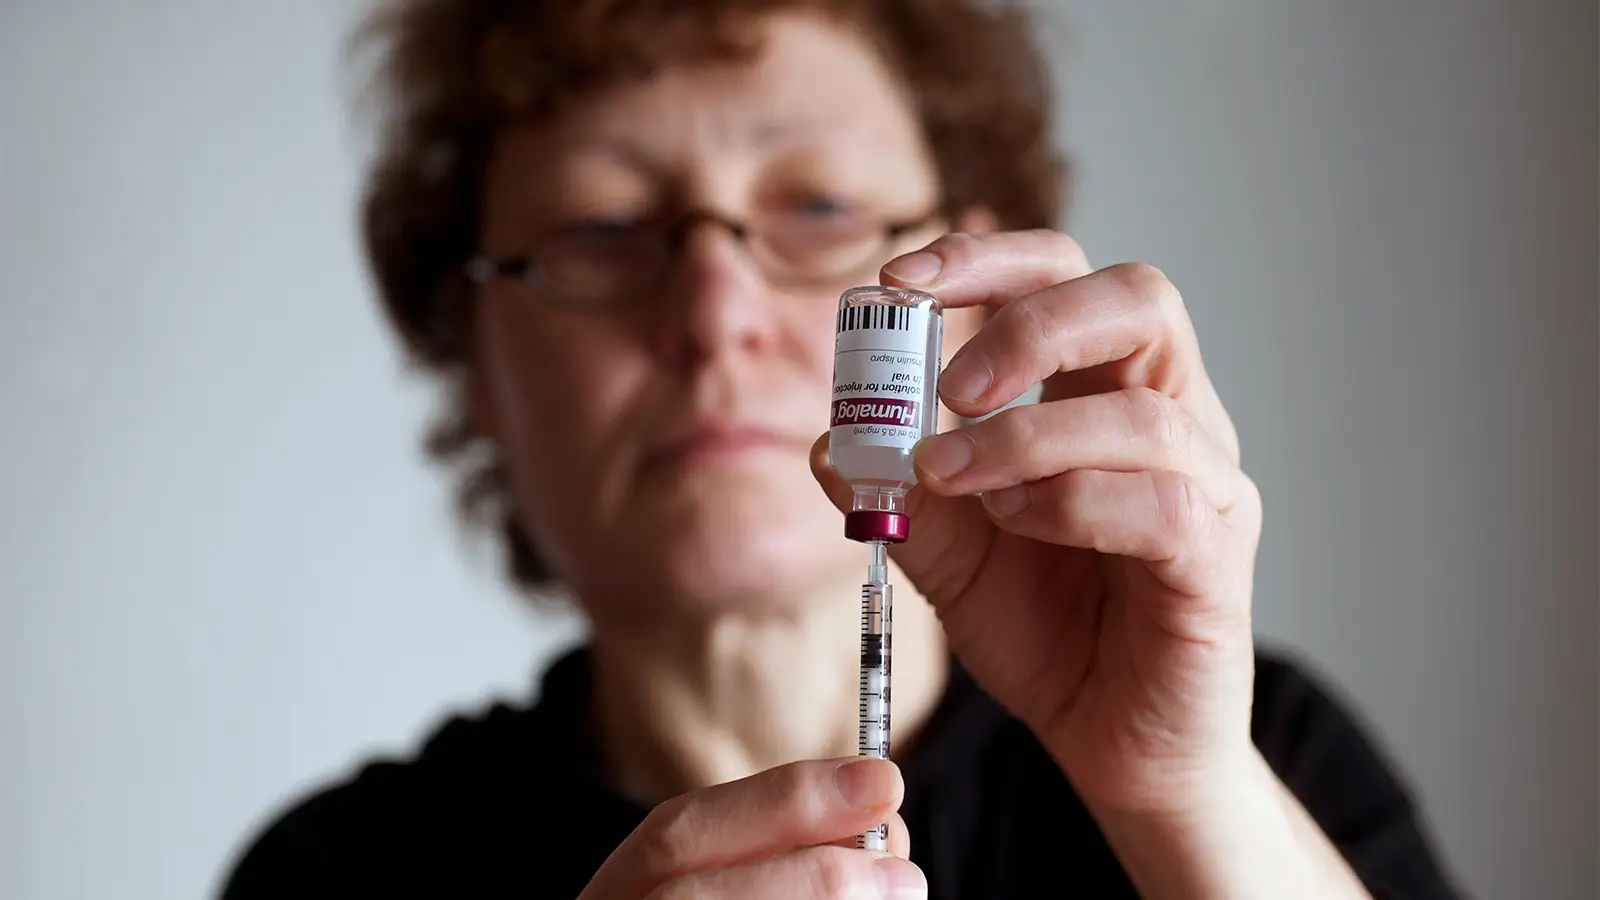 Μελέτη: Η πρόταση της Καλιφόρνια για την παραγωγή ινσουλίνης θα μπορούσε να περιορίσει τις τιμές, να βελτιώσει τη δημόσια υγεία